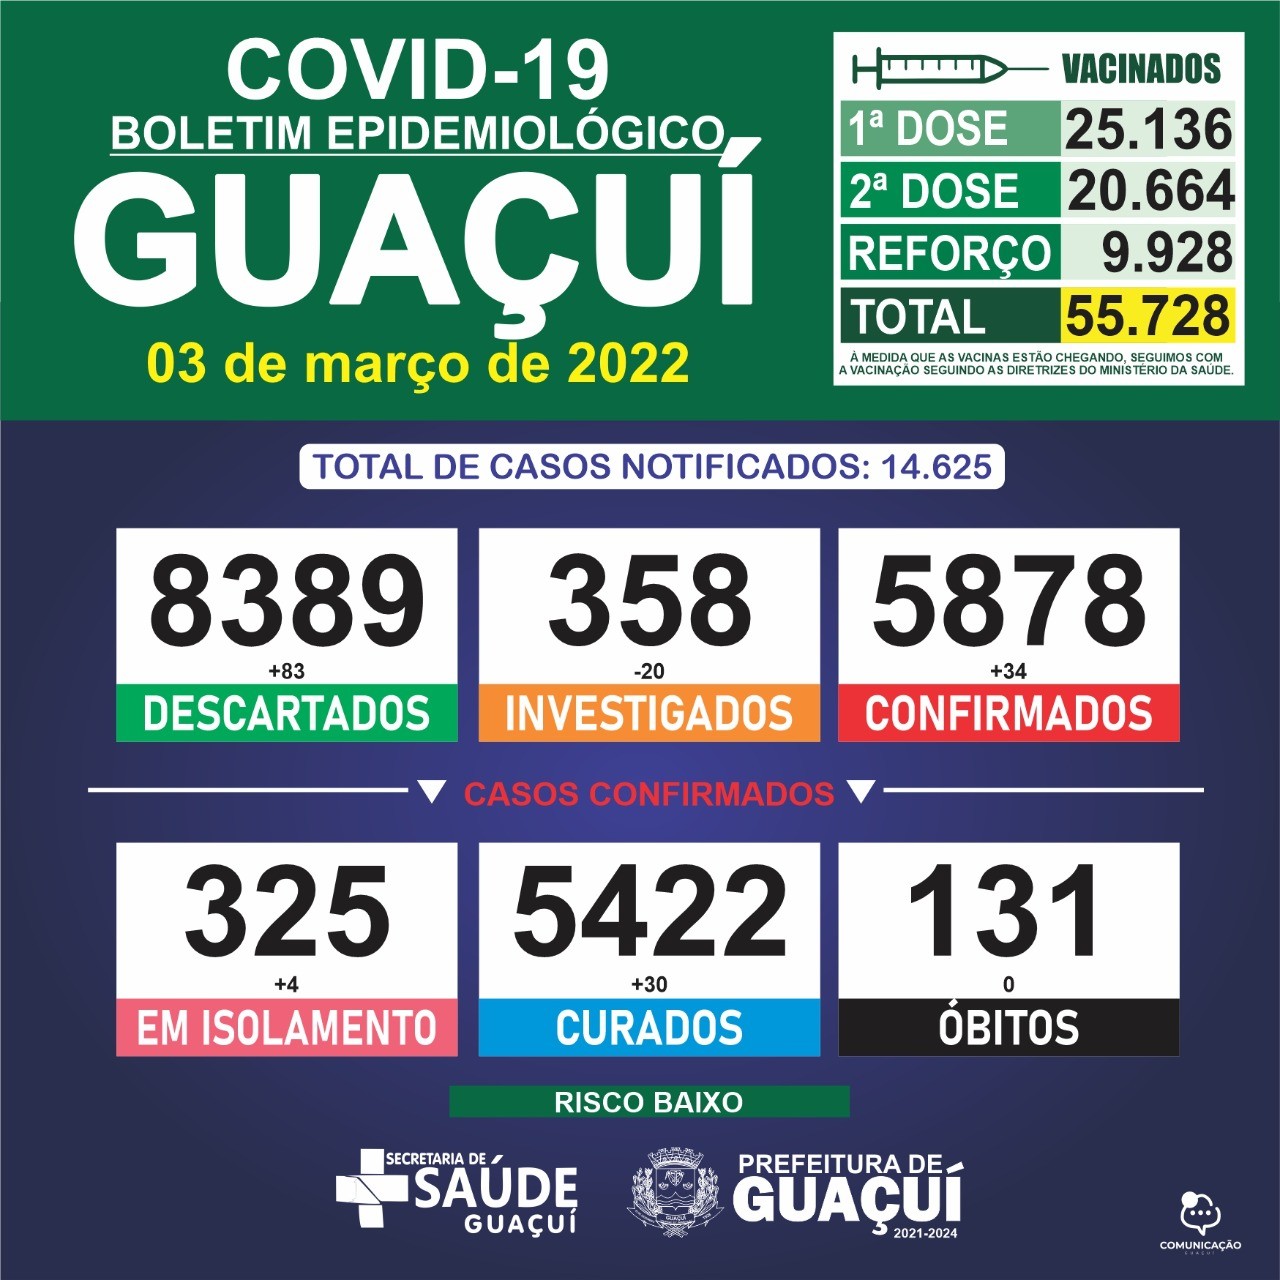 Boletim Epidemiológico 03/03/2022: Guaçuí registra 34 casos confirmados e 30 curados